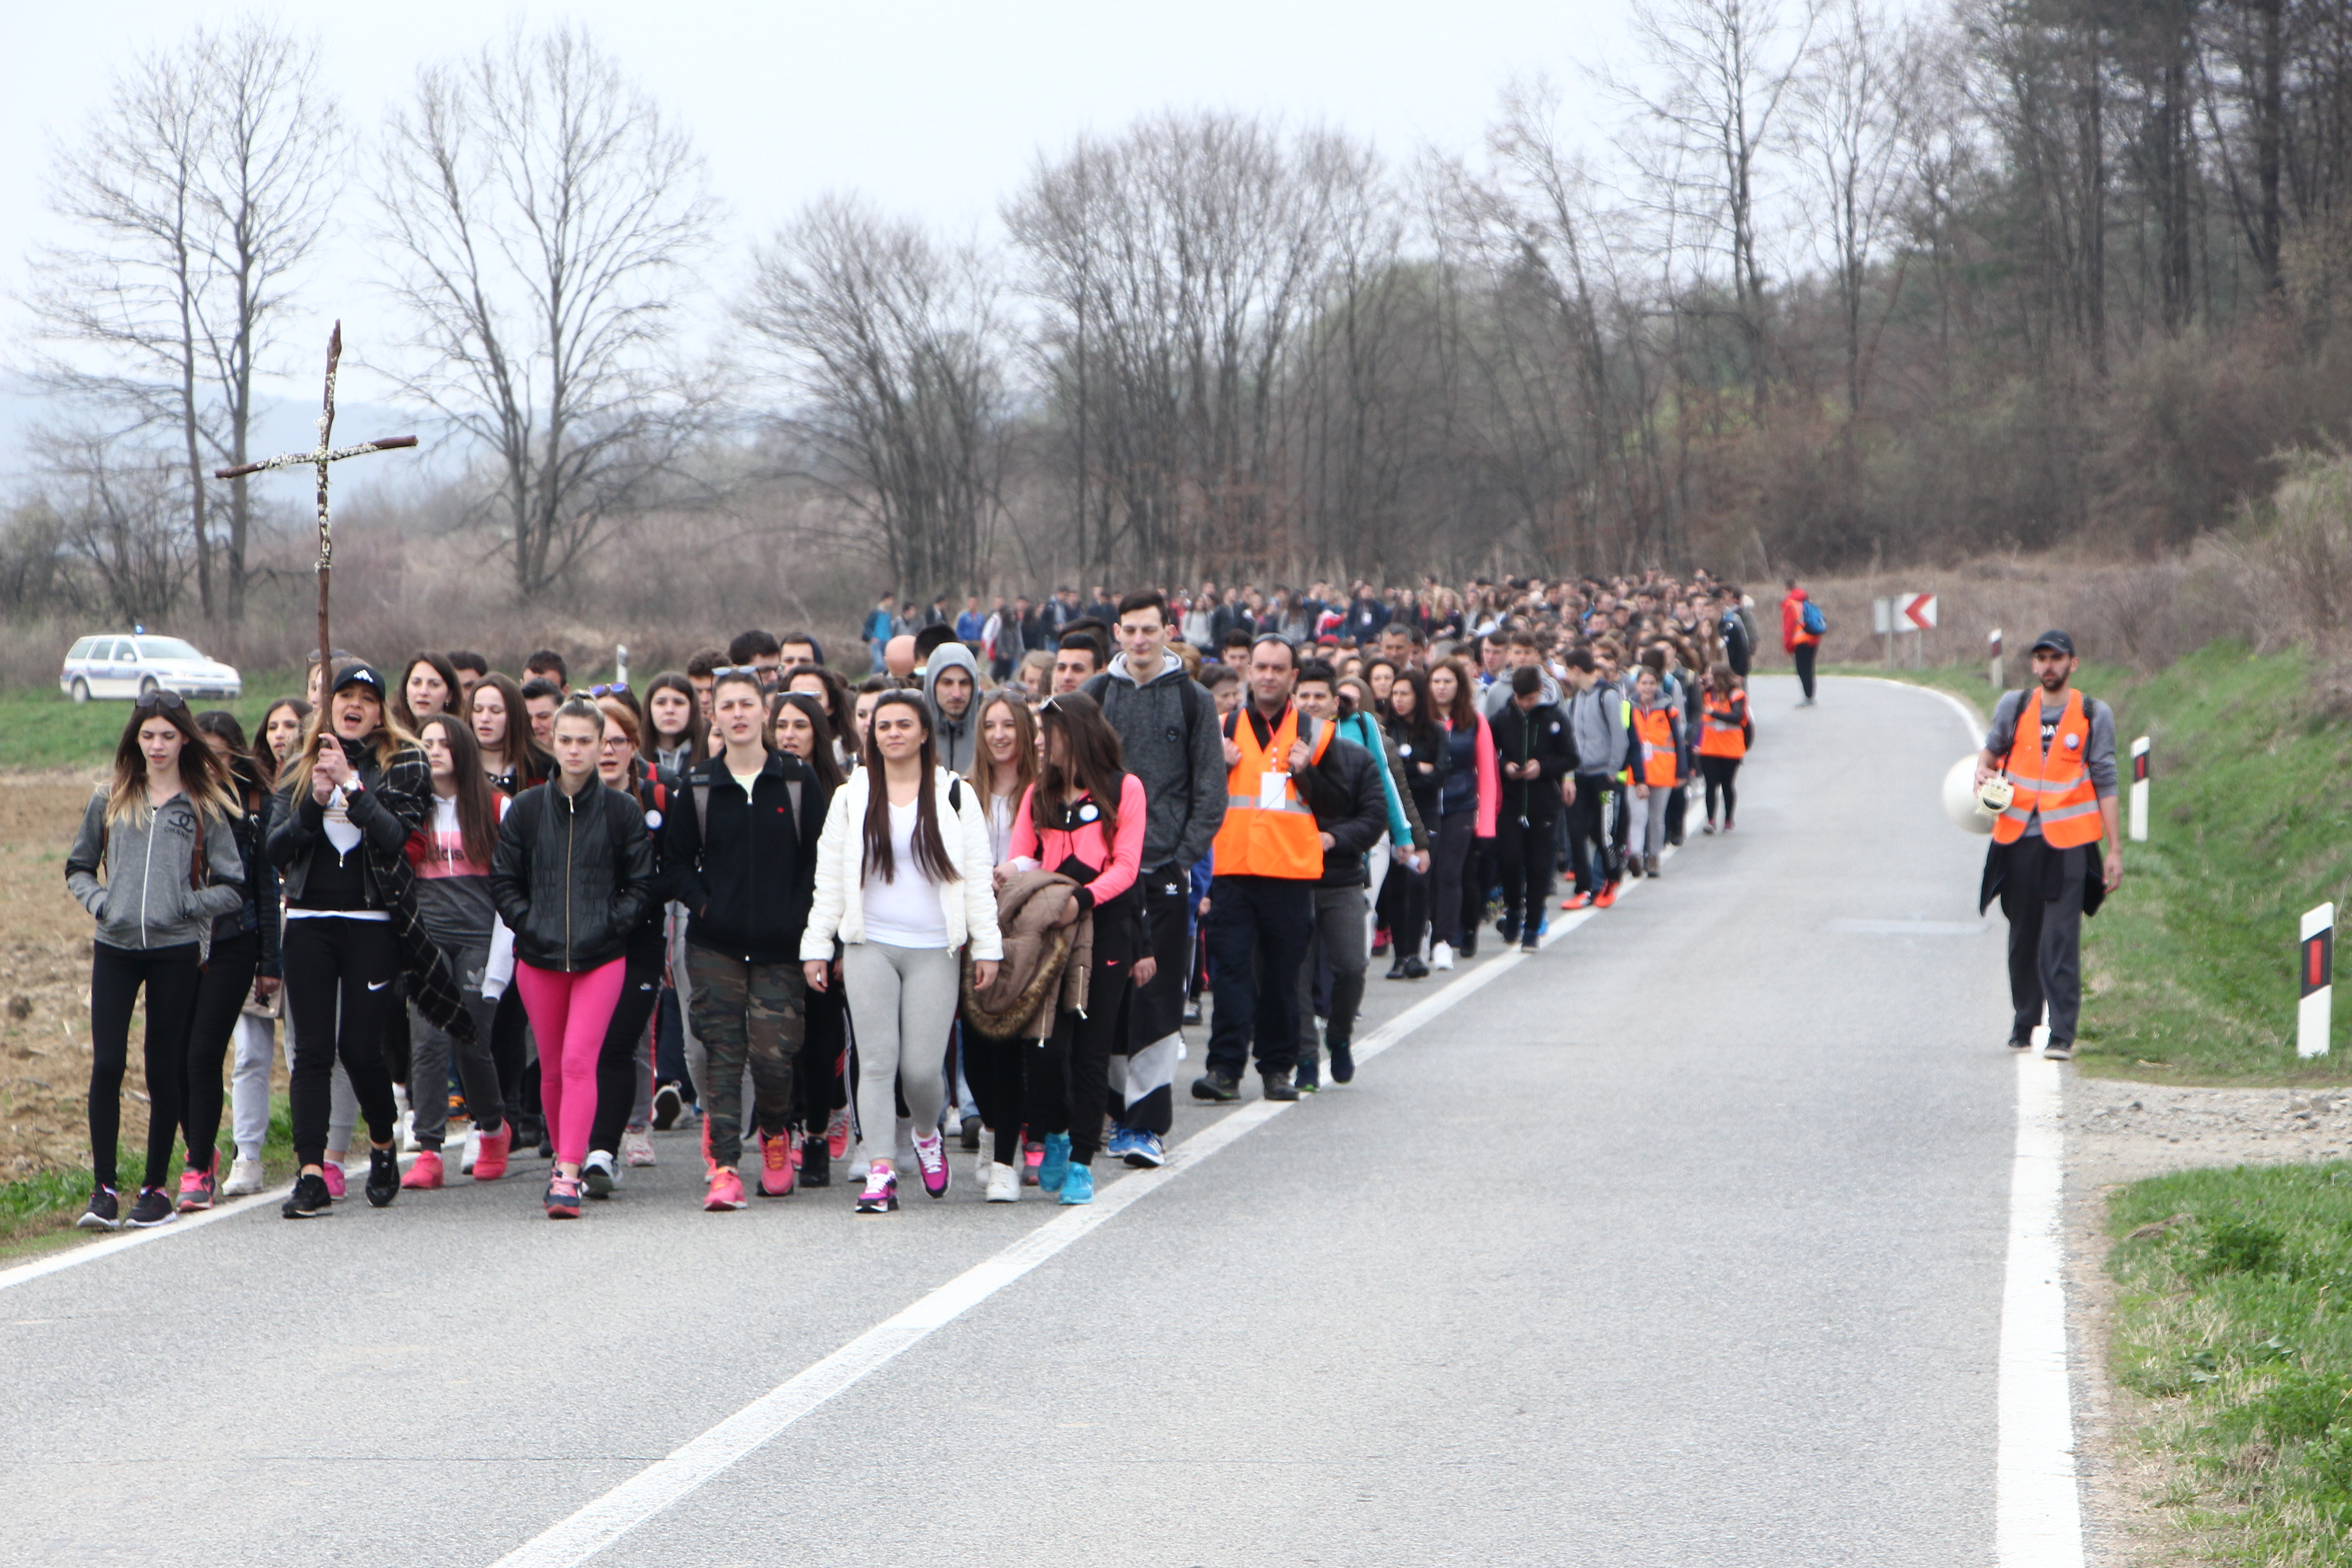 Požega.eu | Križni put mladih Požeške biskupije: Više od 500 pješaka hodočasnika na 45 kilometarskom putu /FOTO GALERIJA/